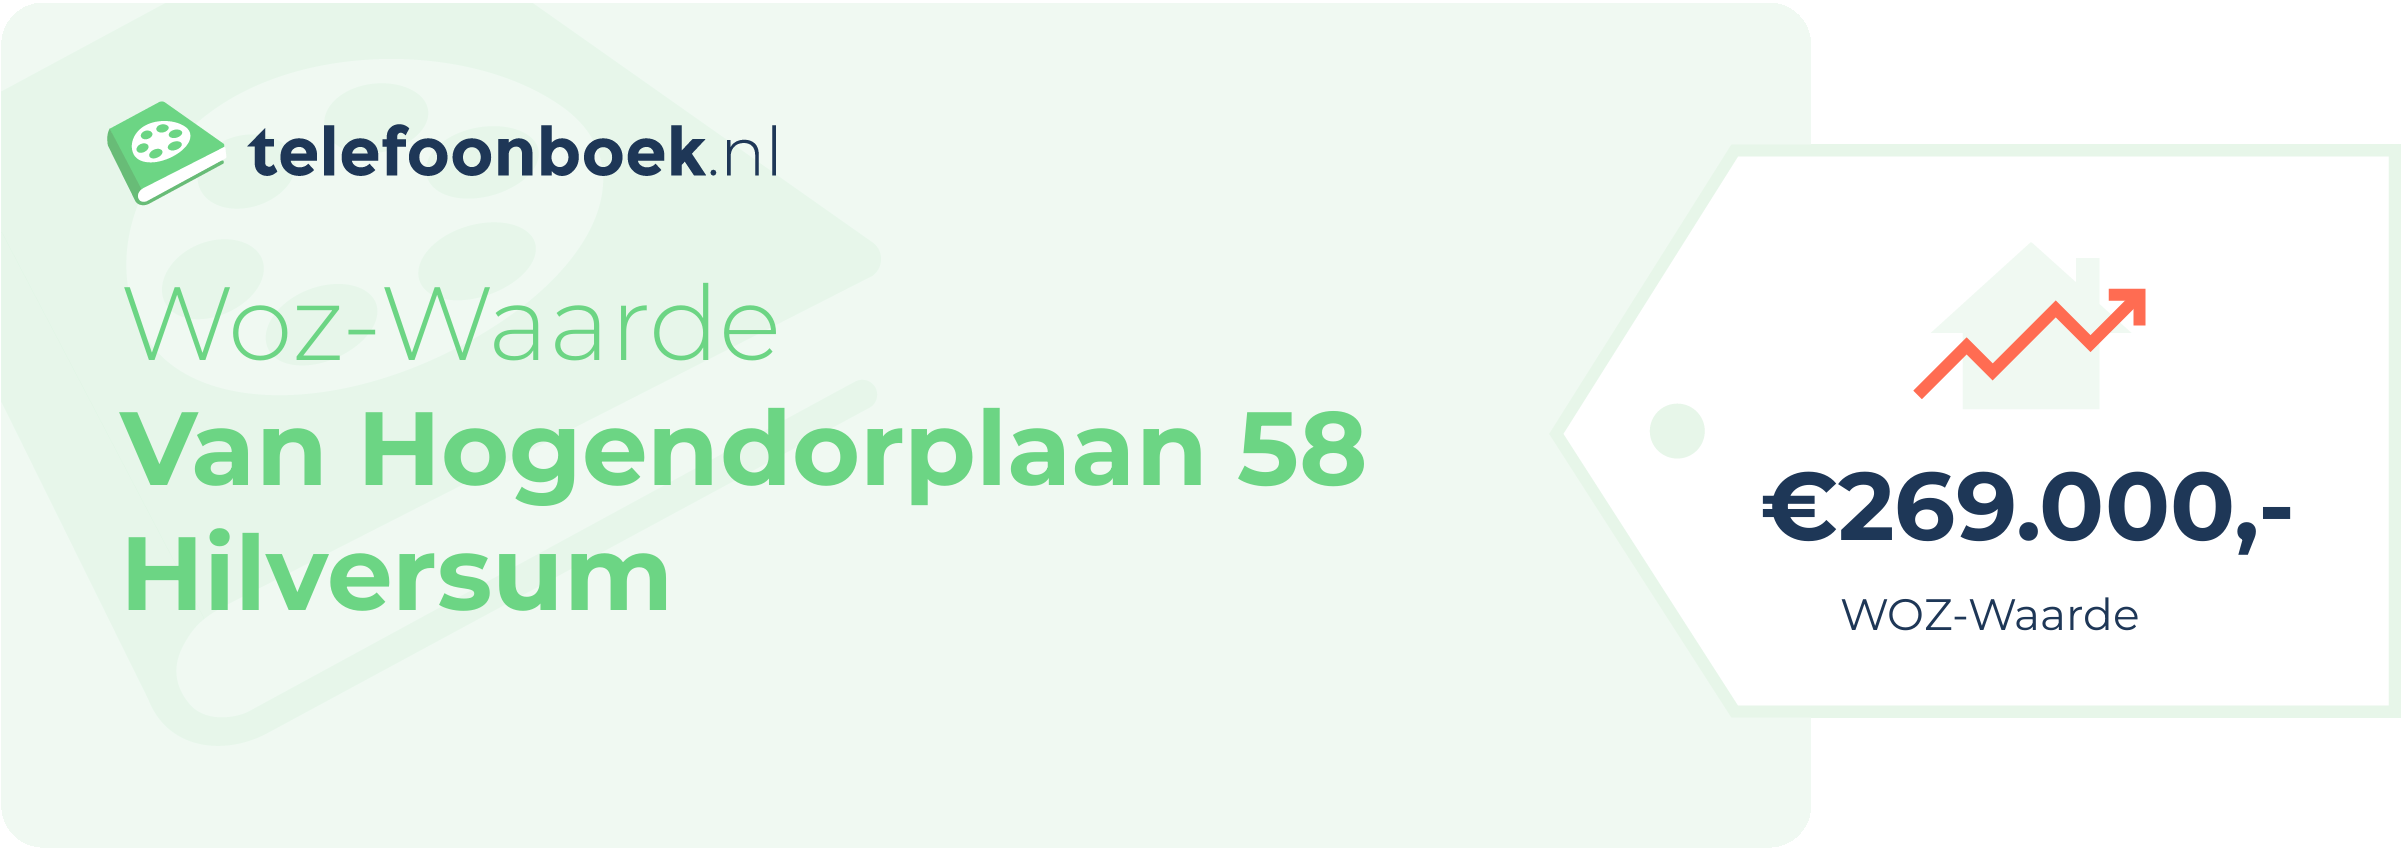 WOZ-waarde Van Hogendorplaan 58 Hilversum